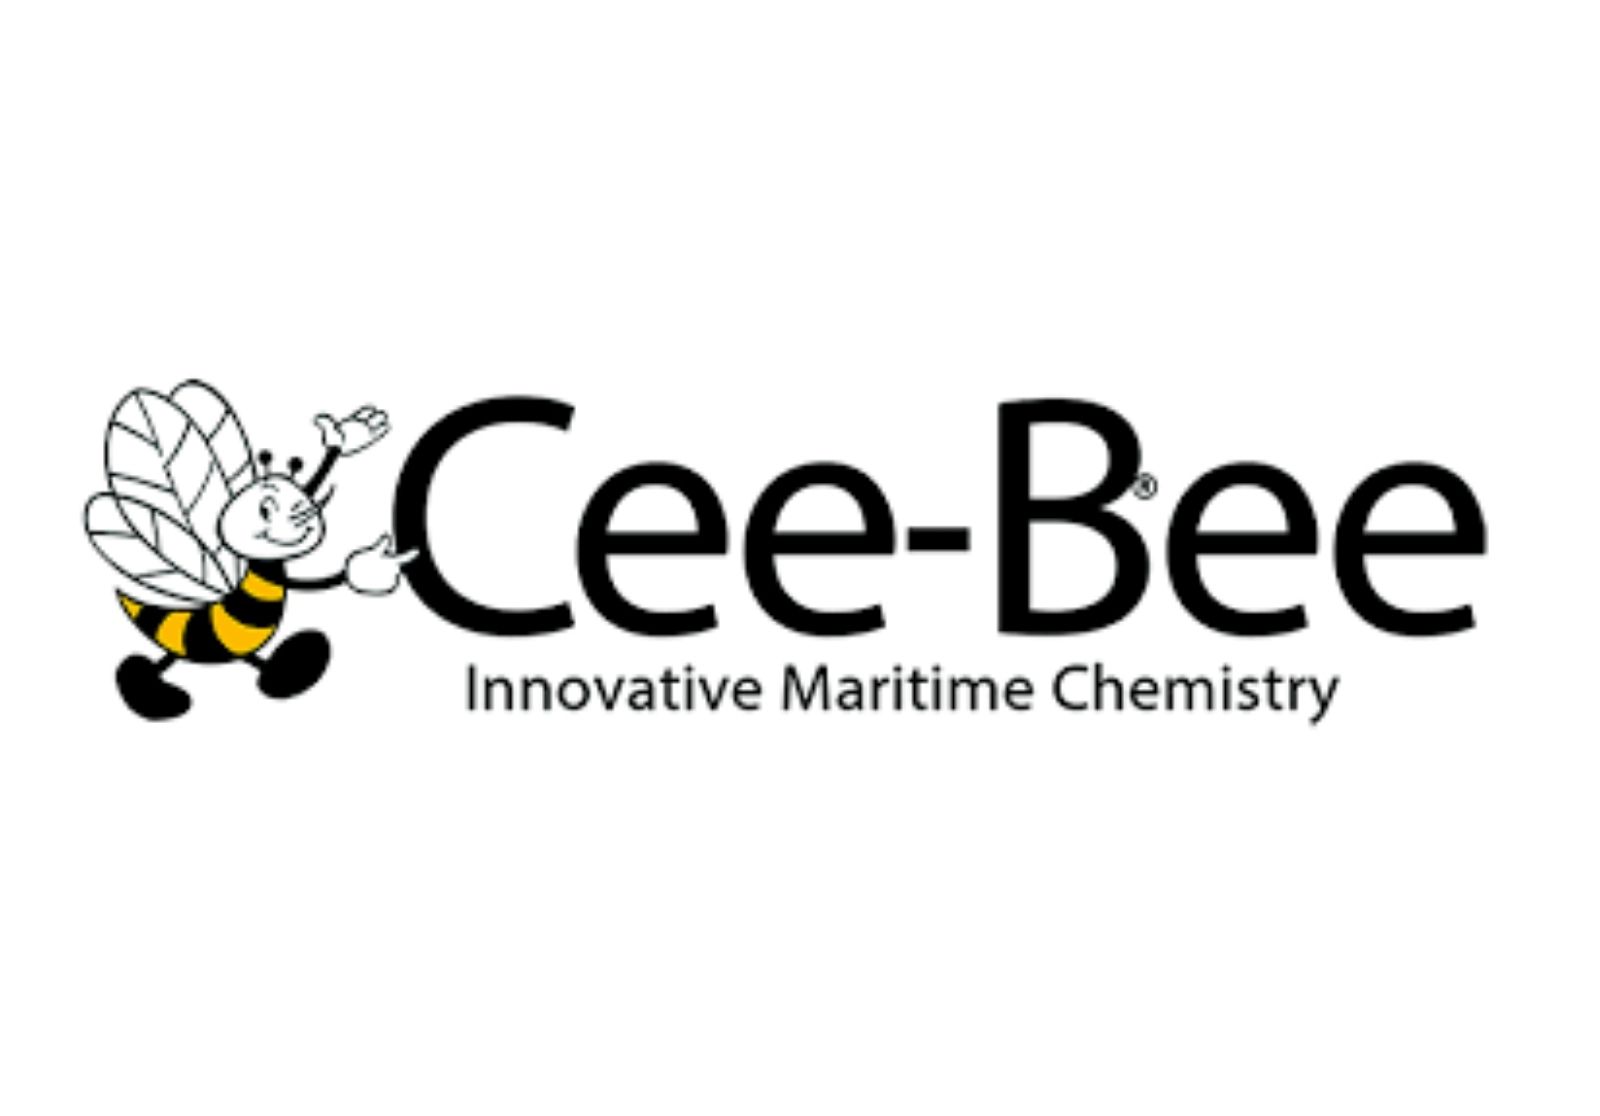 Cee-Bee